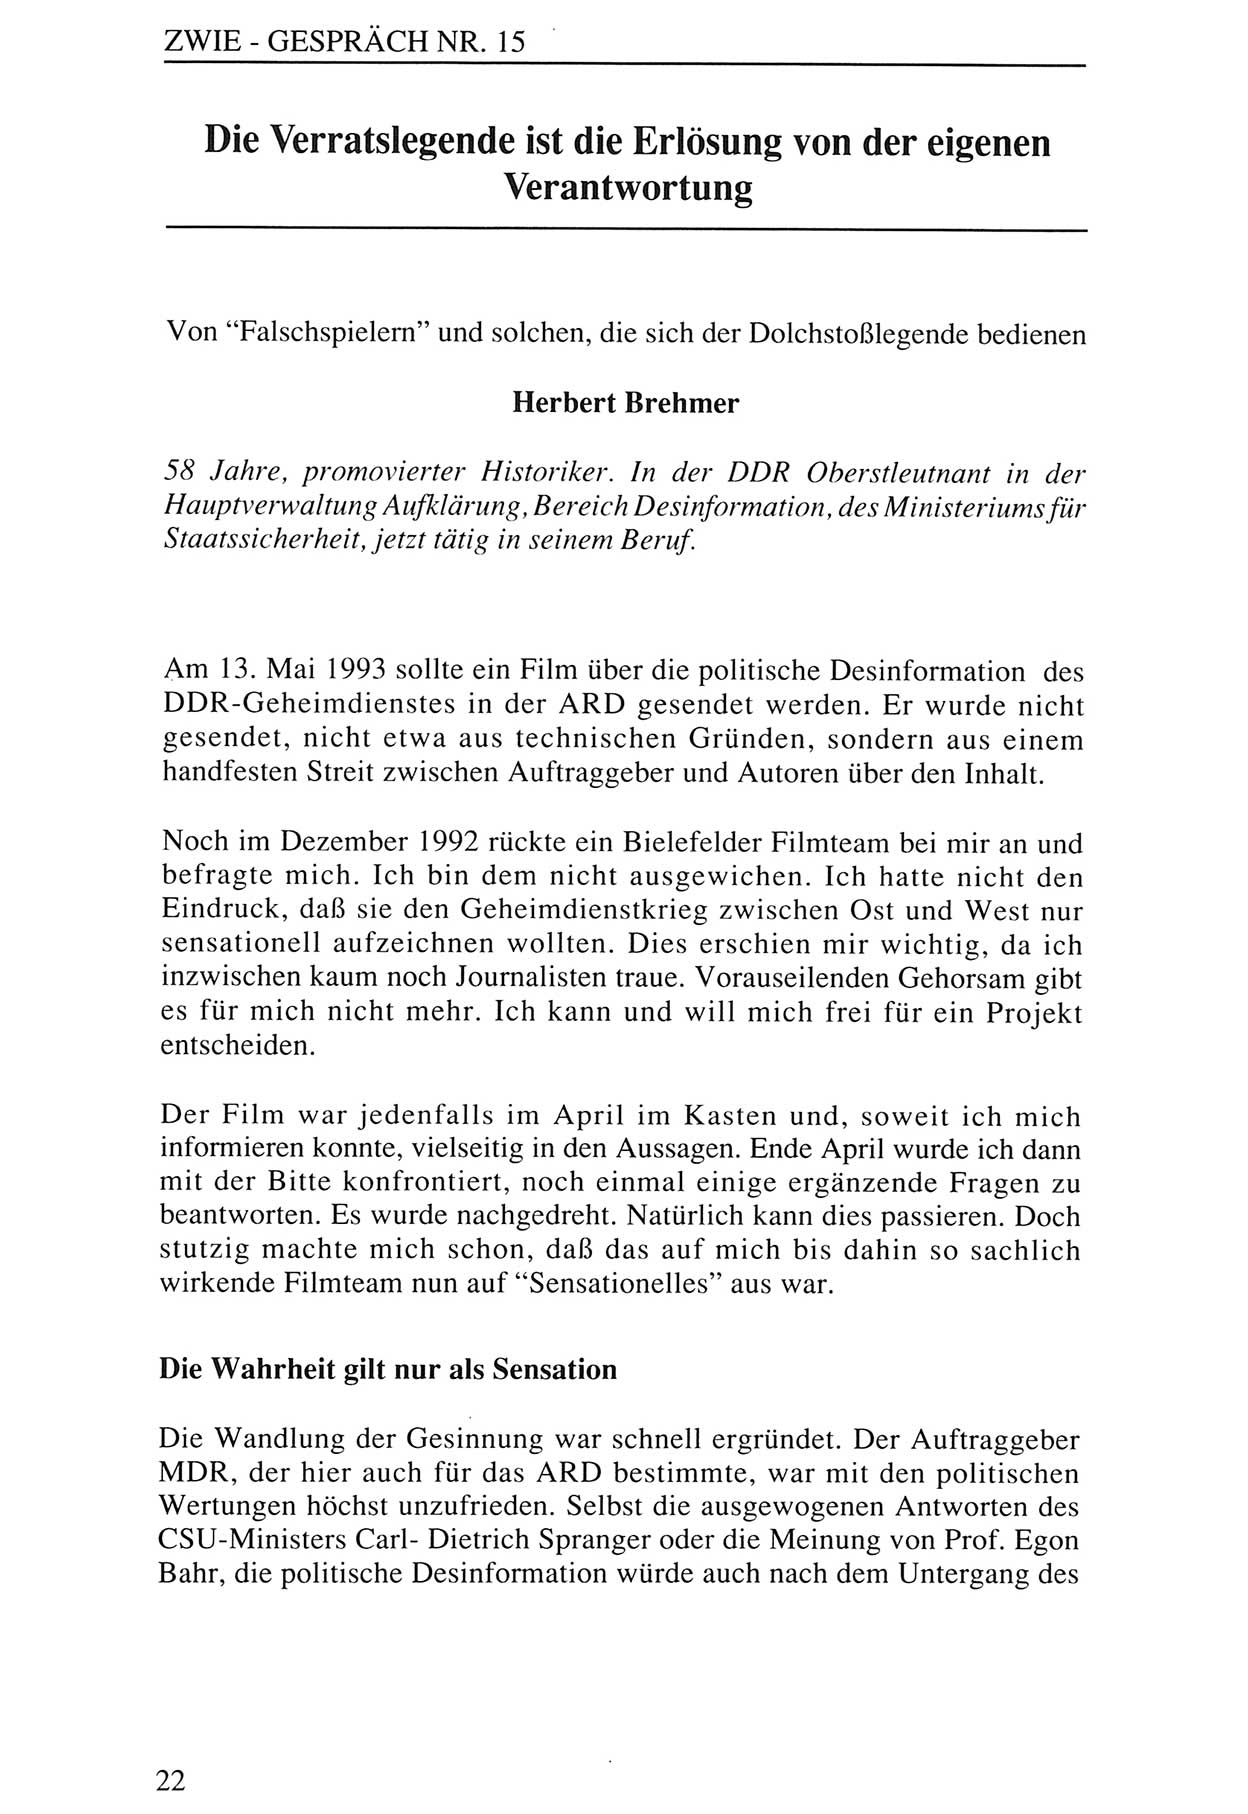 Zwie-Gespräch, Beiträge zur Aufarbeitung der Staatssicherheits-Vergangenheit [Deutsche Demokratische Republik (DDR)], Ausgabe Nr. 15, Berlin 1993, Seite 22 (Zwie-Gespr. Ausg. 15 1993, S. 22)